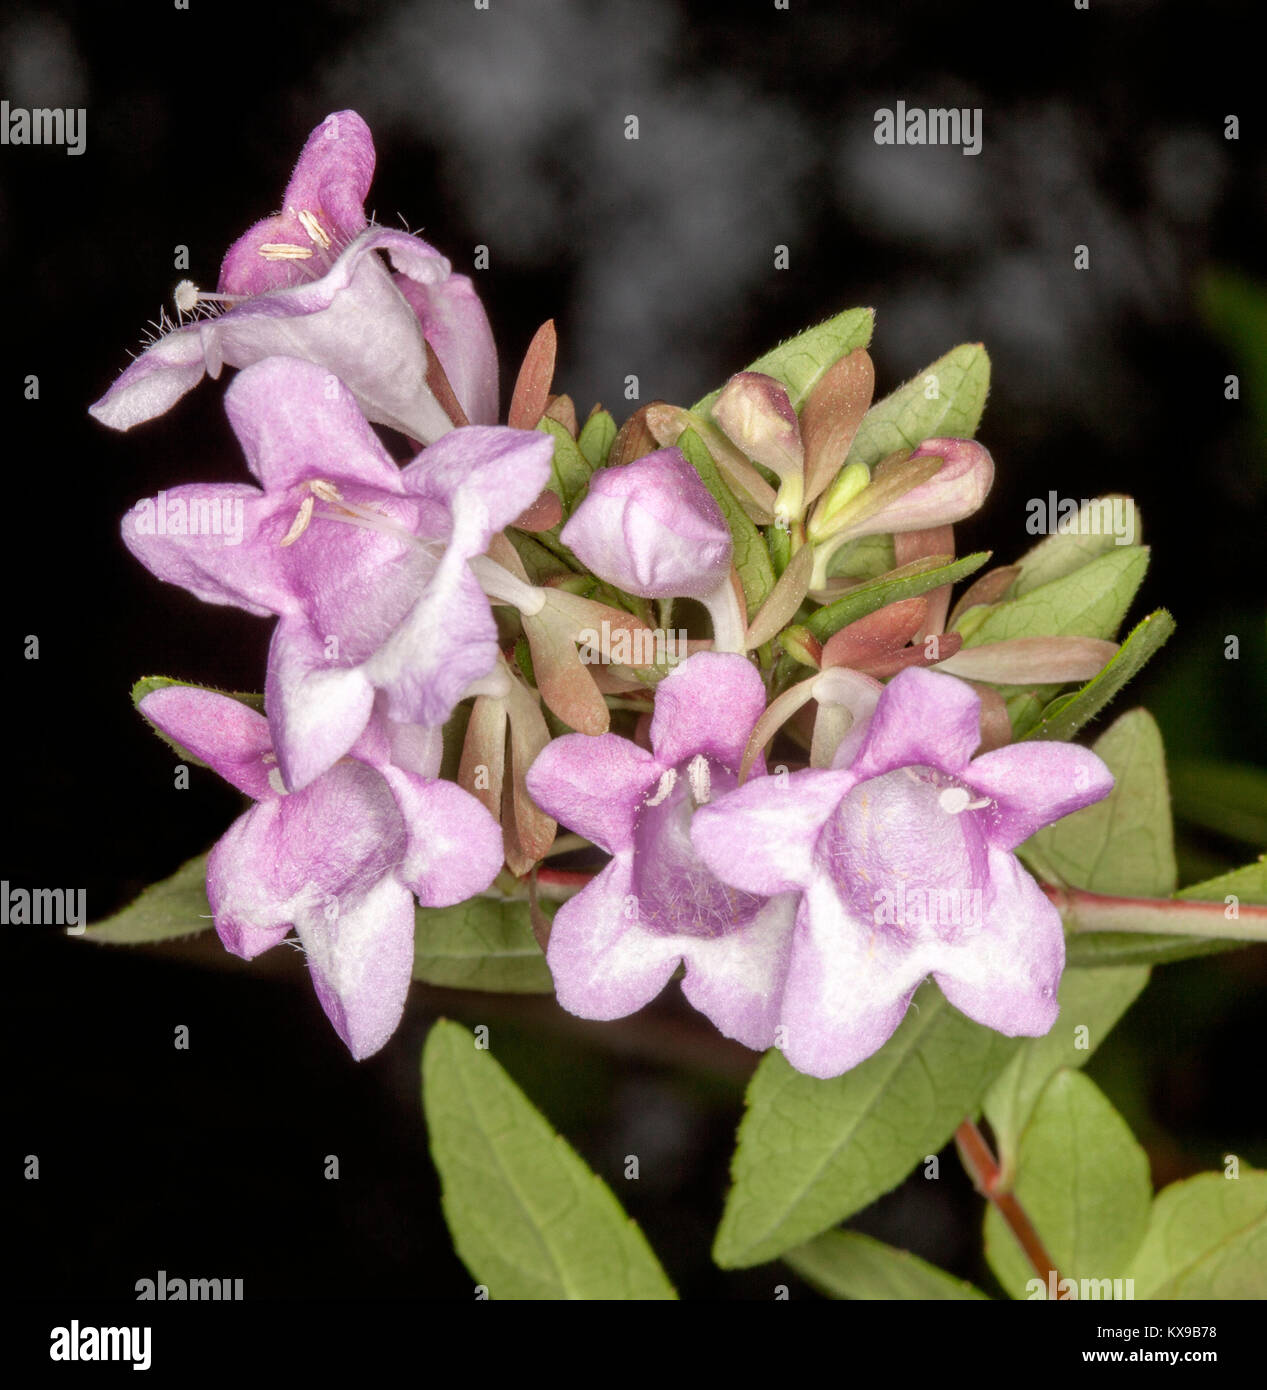 Flores perfumadas de color rosa pálido y hojas de luz verde de Abelia schummannii sobre fondo oscuro Foto de stock